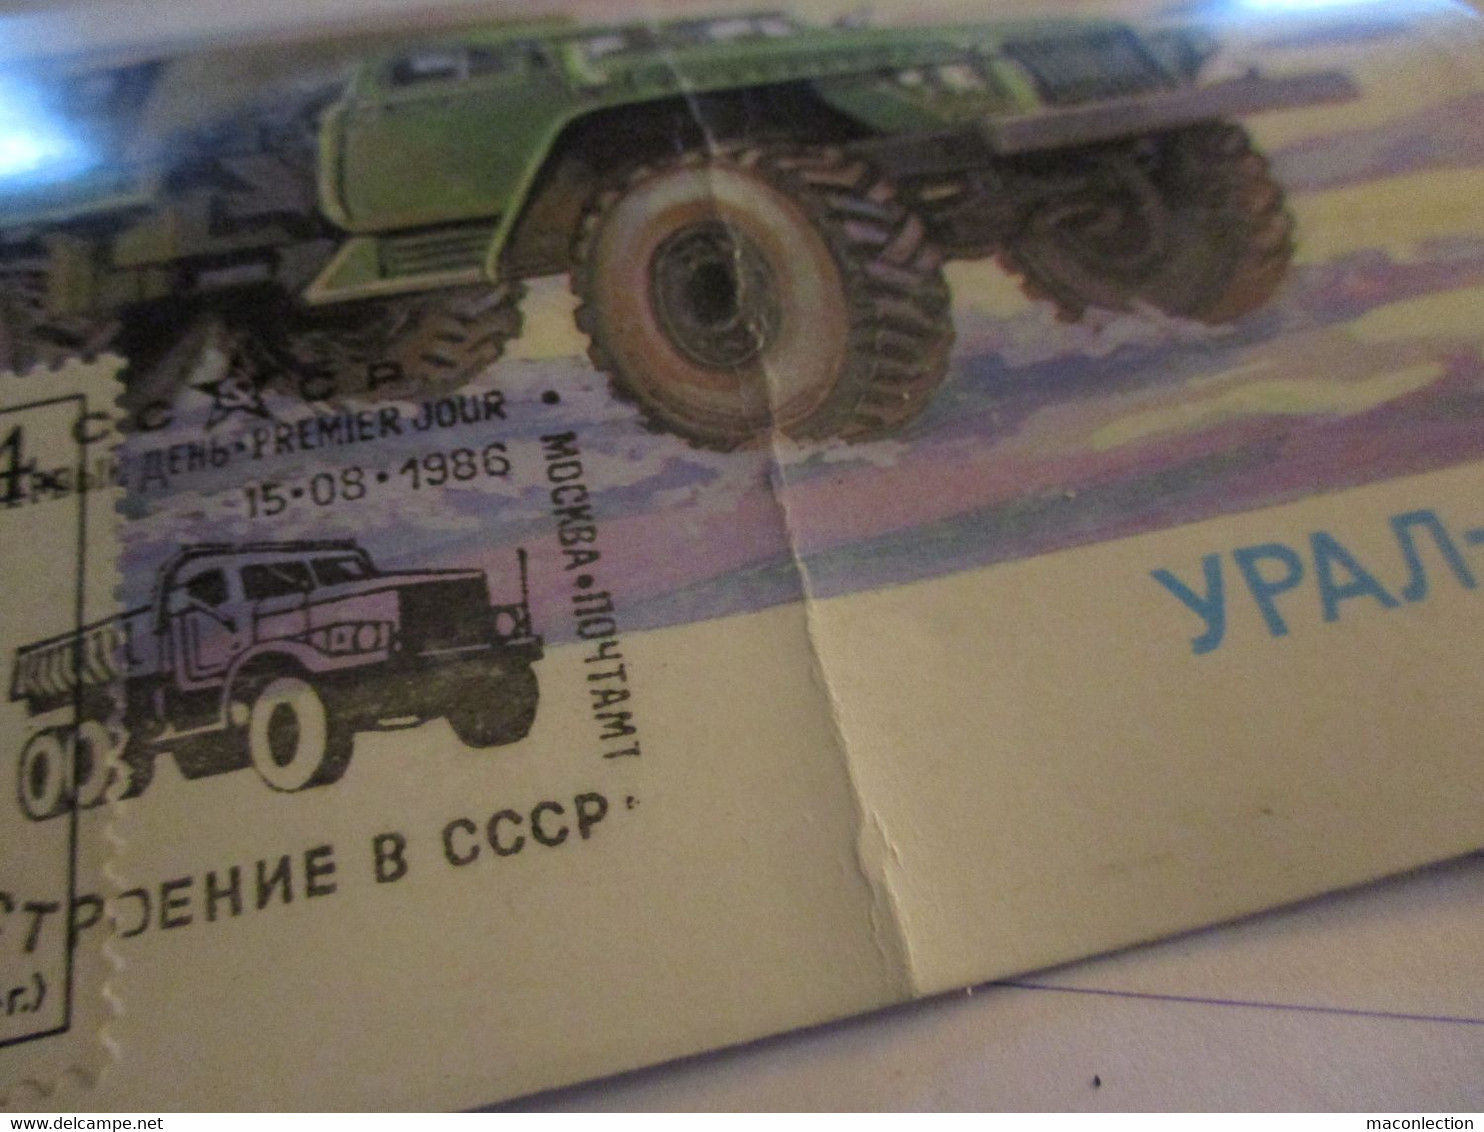 Ancien S Camion S Russe S  Carte Postale Timbrée Oblitéré 1986 - Camion